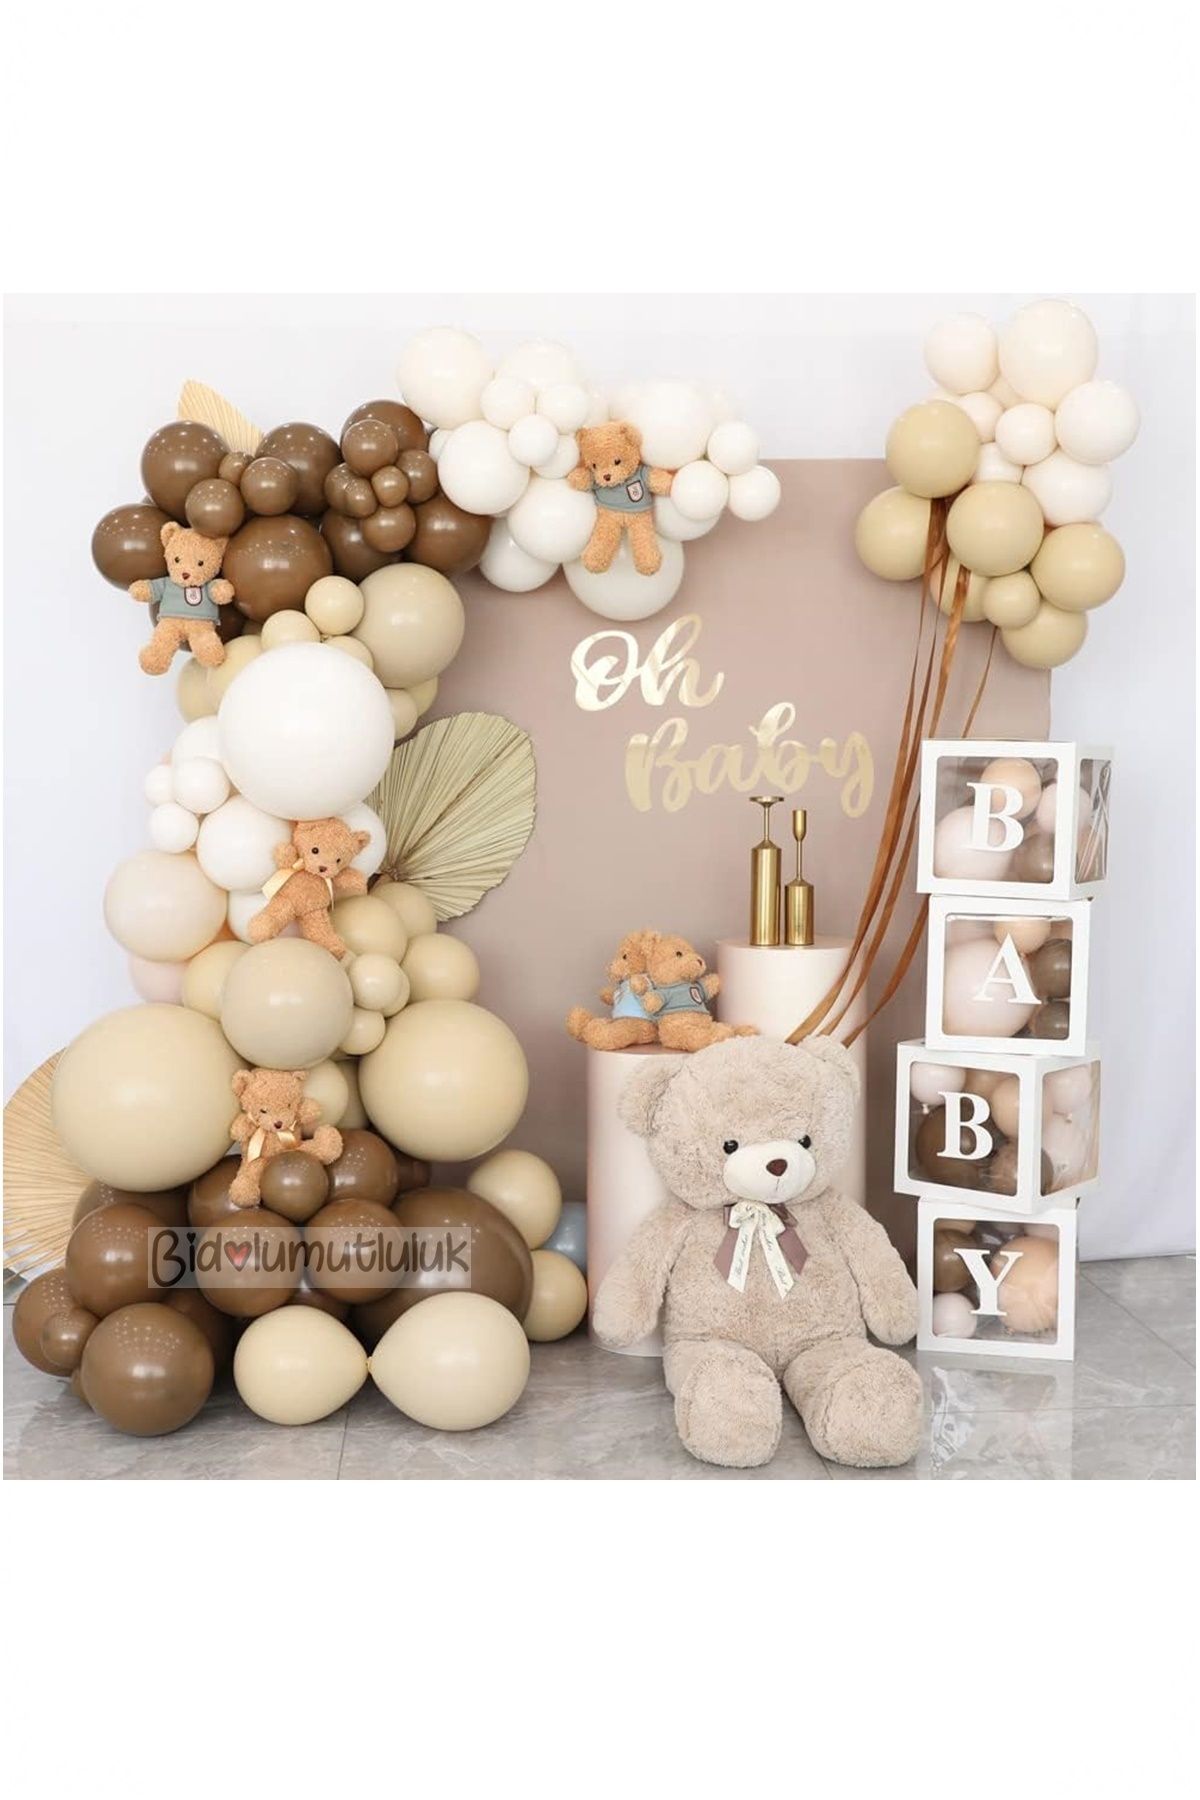 BİDOLUMUTLULUK Baby Yazılı Balon Kutusu Karamel Doğum Günü Seti